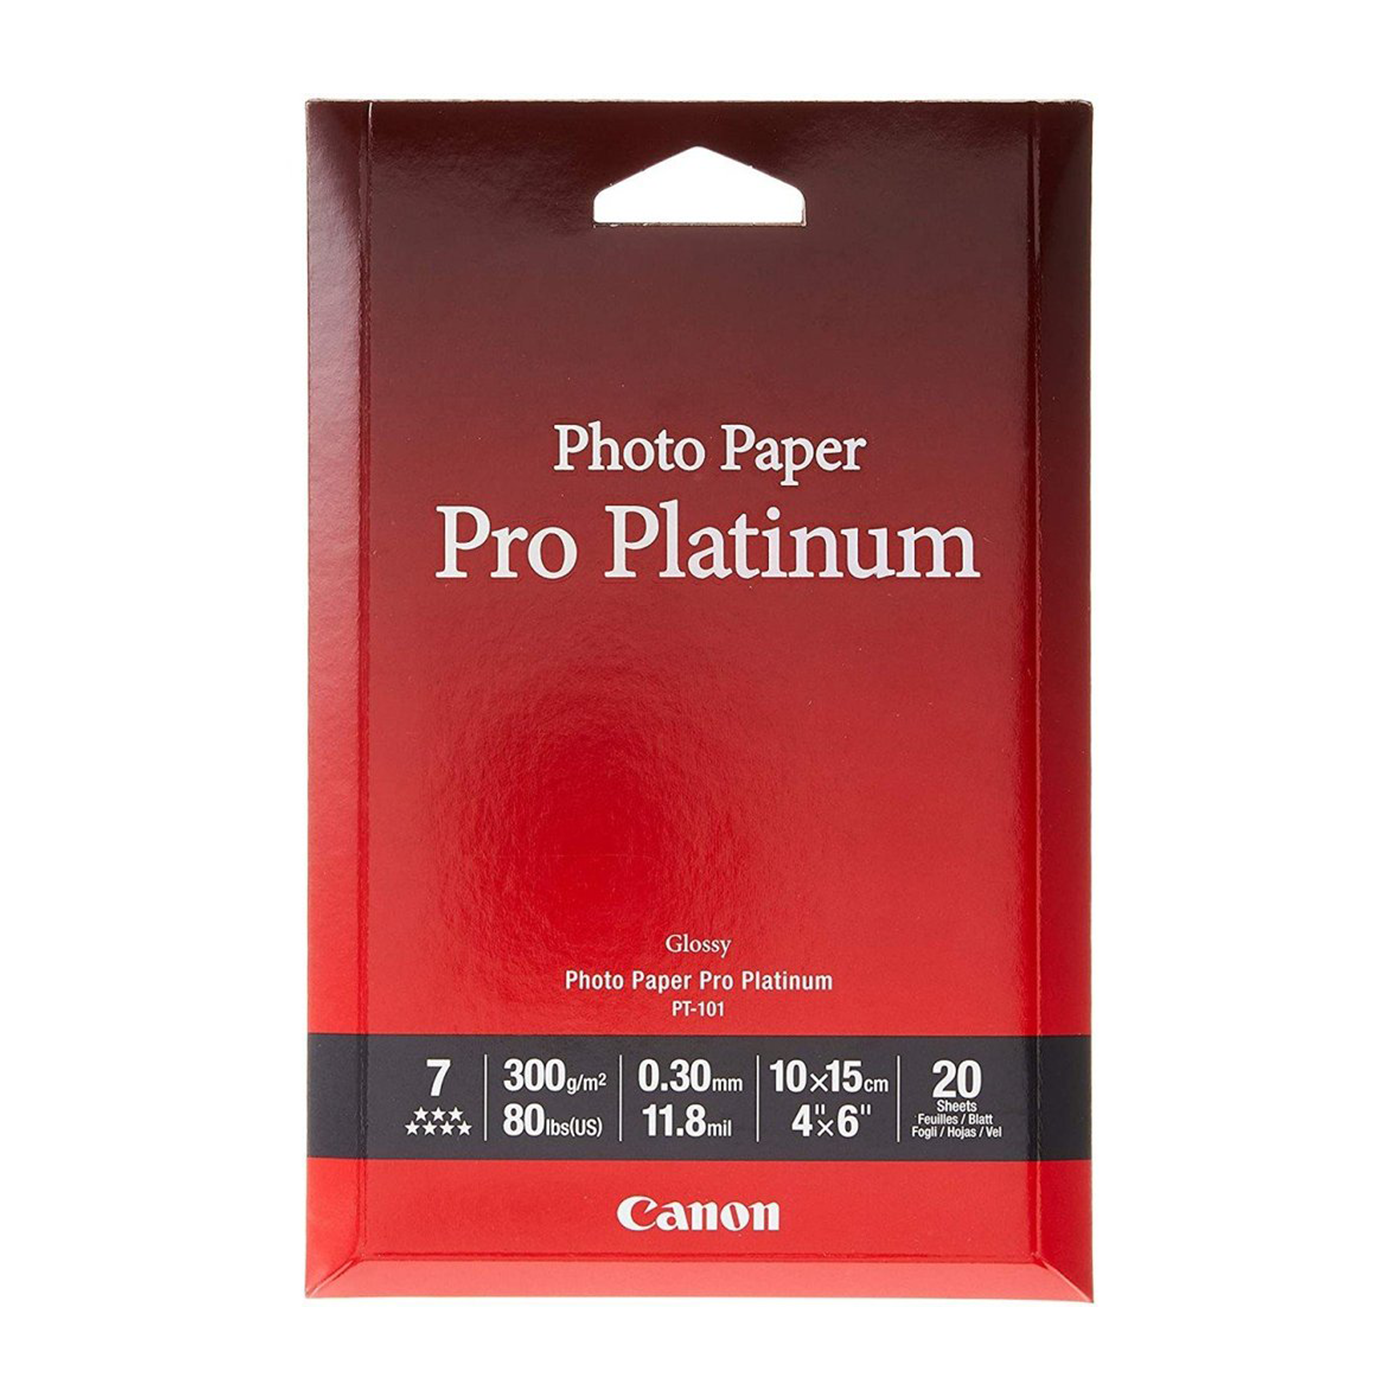 Canon Photo Paper Pro Platinum 101 PT-101 Size - A4 Sheets 20 